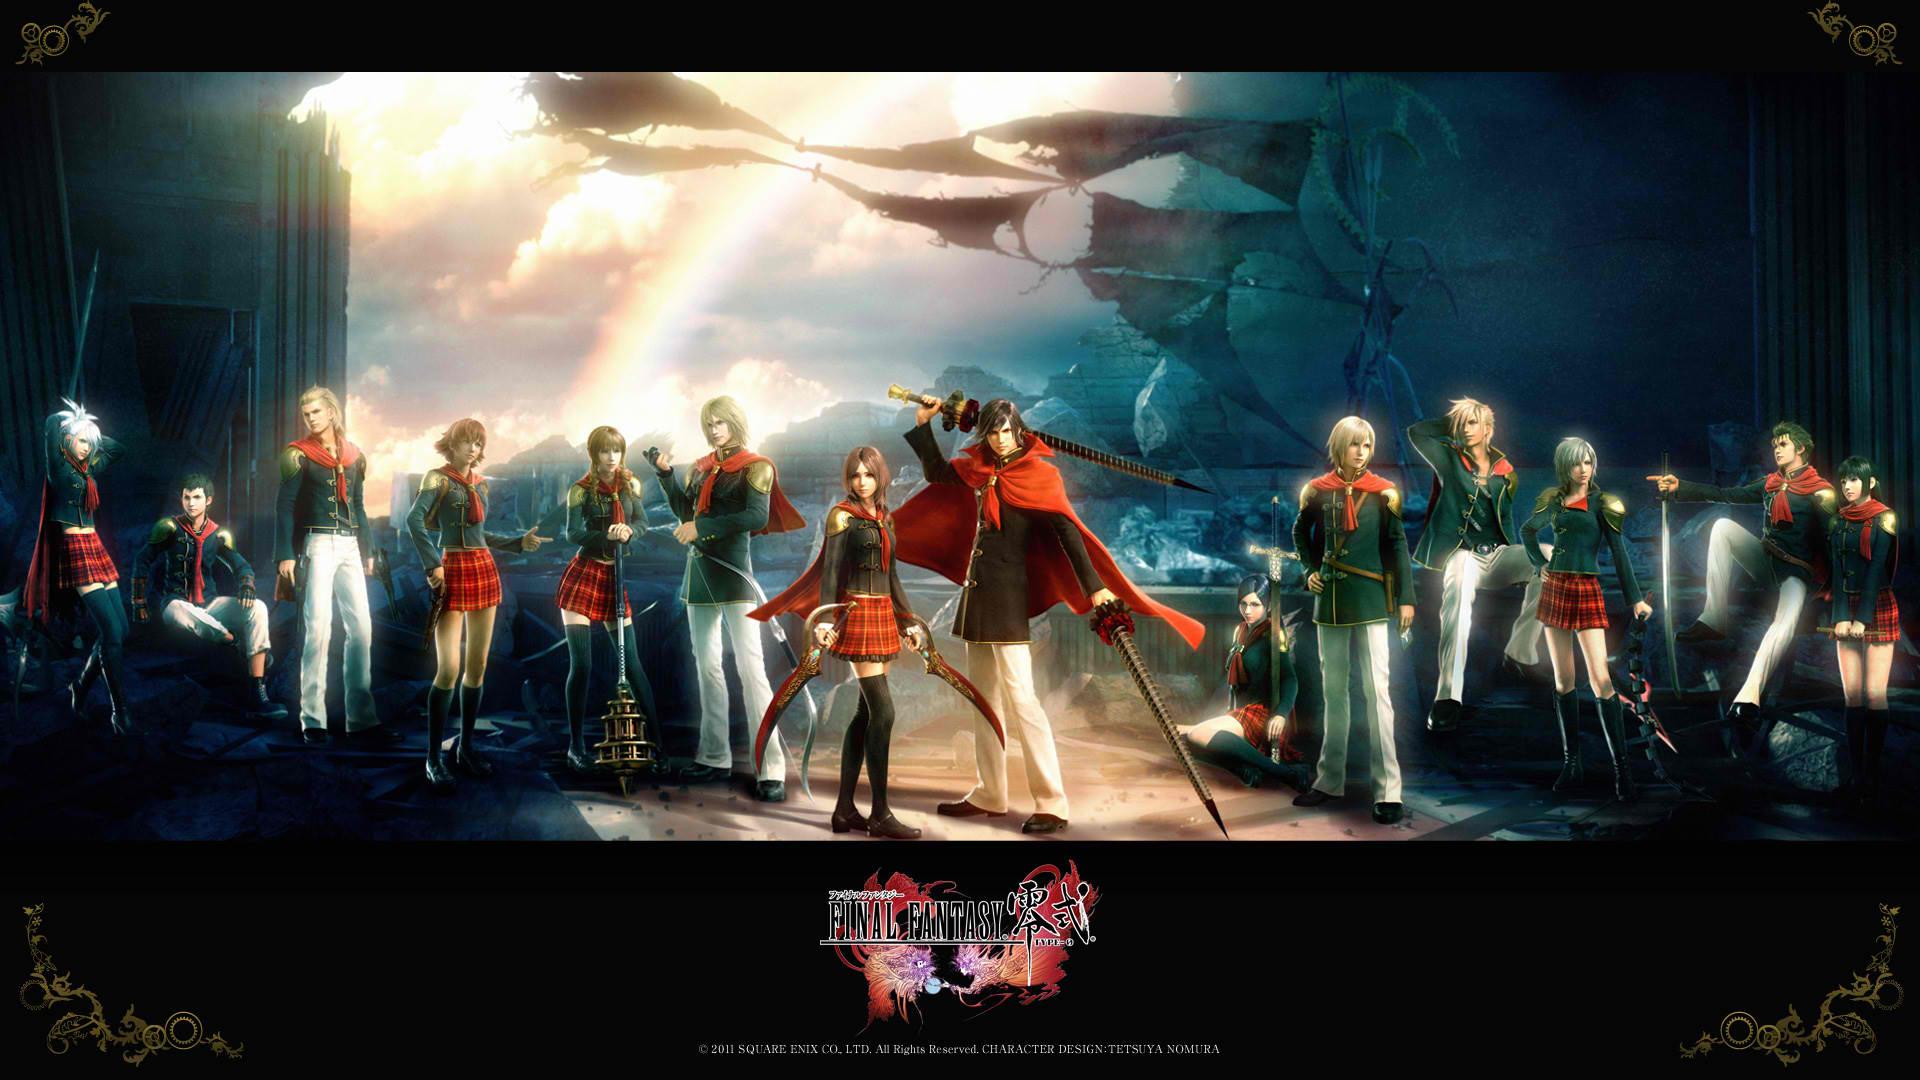 Bạn là người yêu thích trò chơi Final Fantasy VIII? Bạn muốn mang cảm xúc đó vào desktop của mình? Hãy tải về những hình nền Final Fantasy VIII Wallpapers và cảm nhận sự hoàn hảo của trò chơi này trên màn hình của bạn.